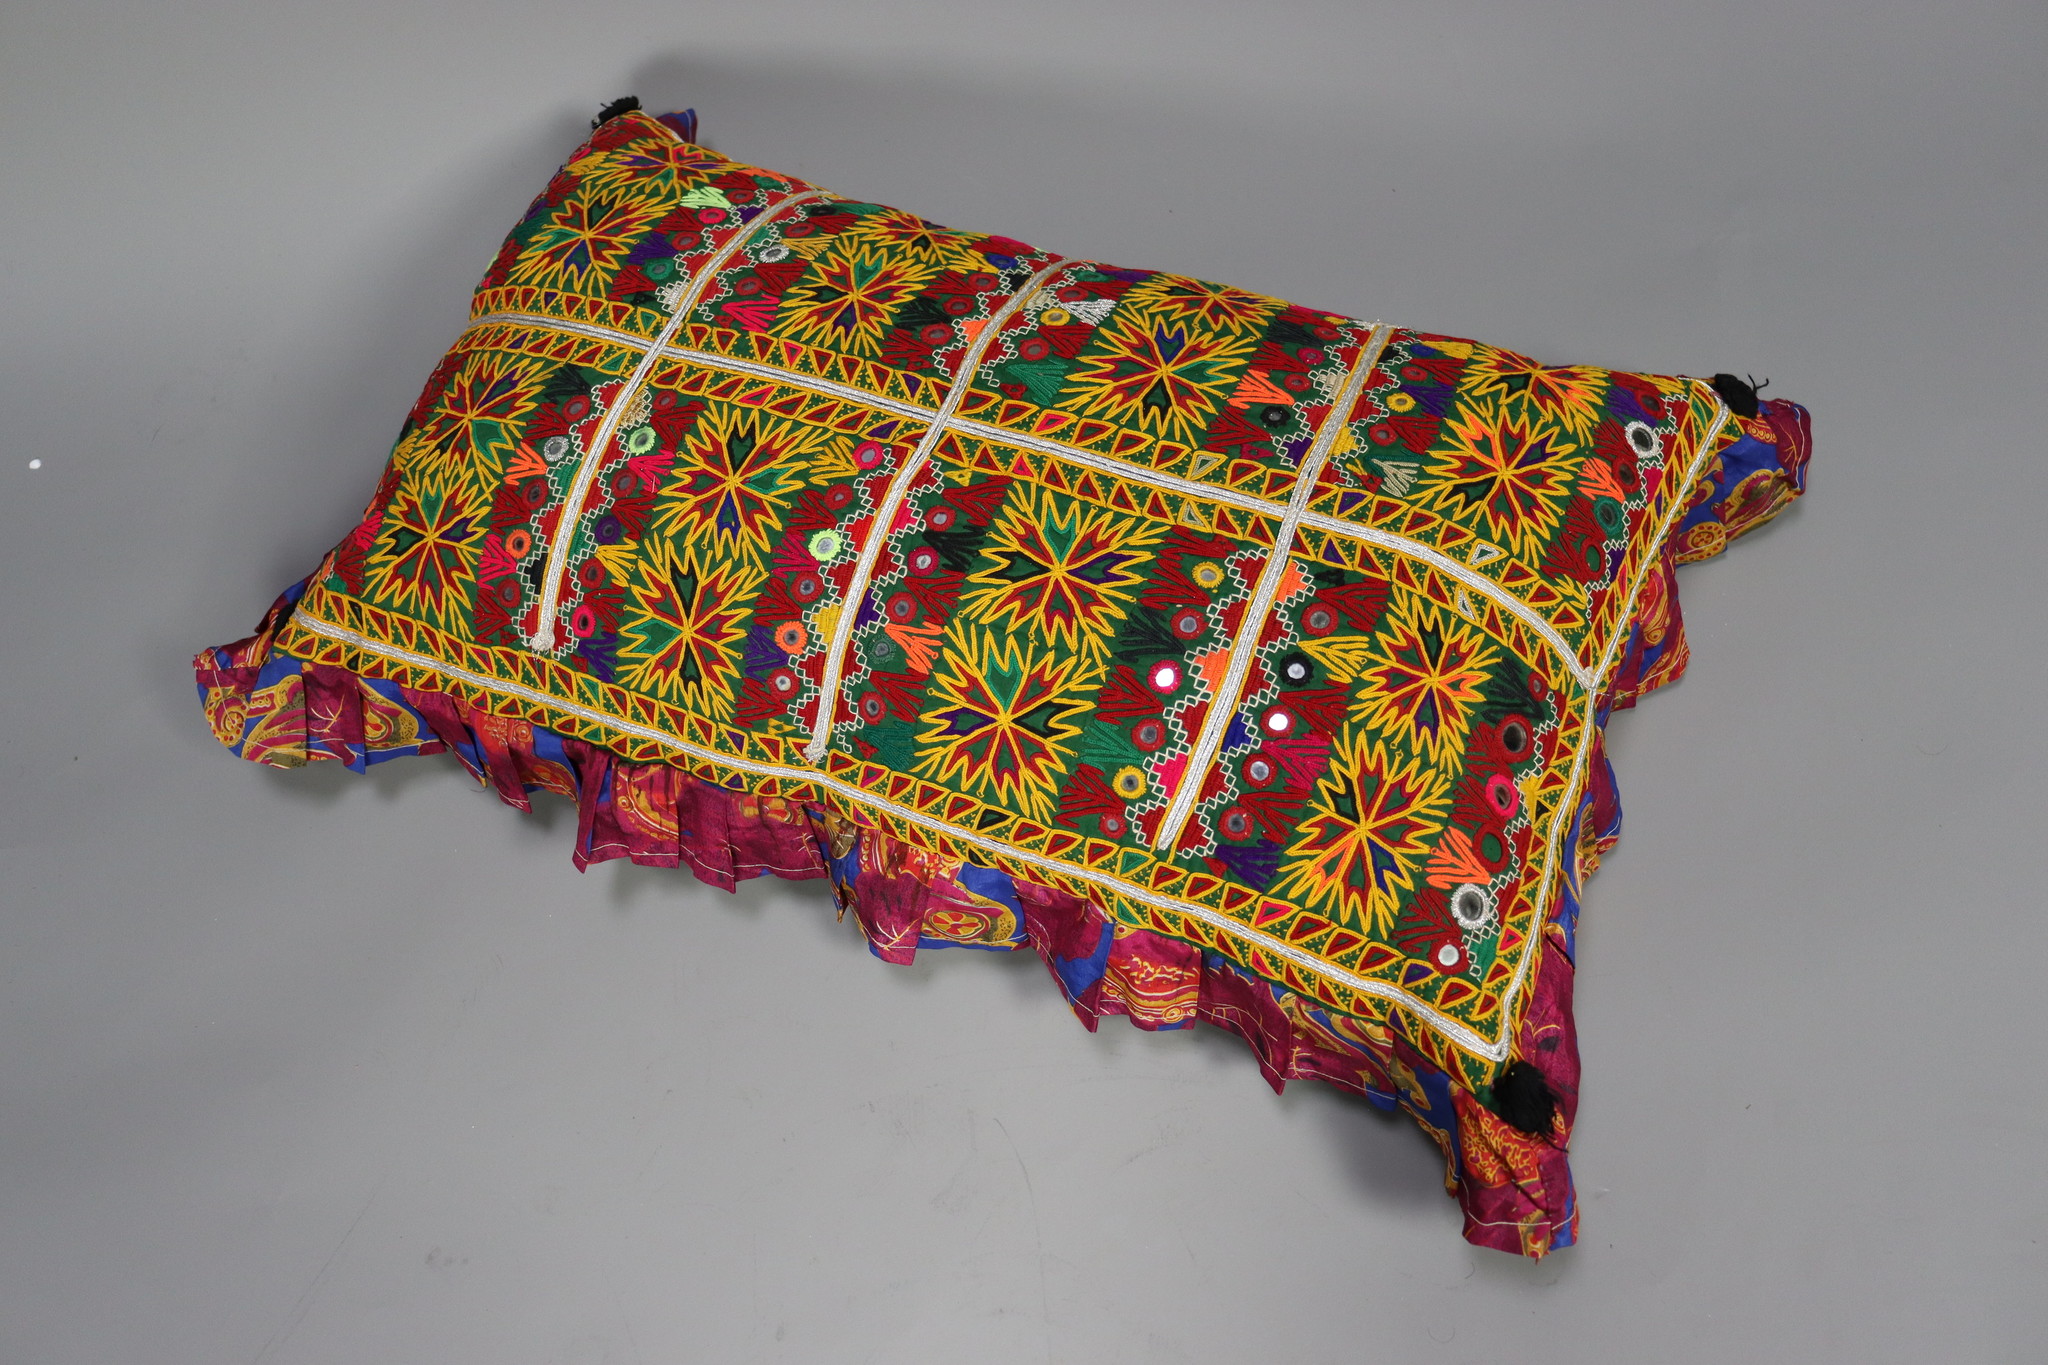 antique nomadic susani cushions cushion pillow   sindh pakistan  No:2